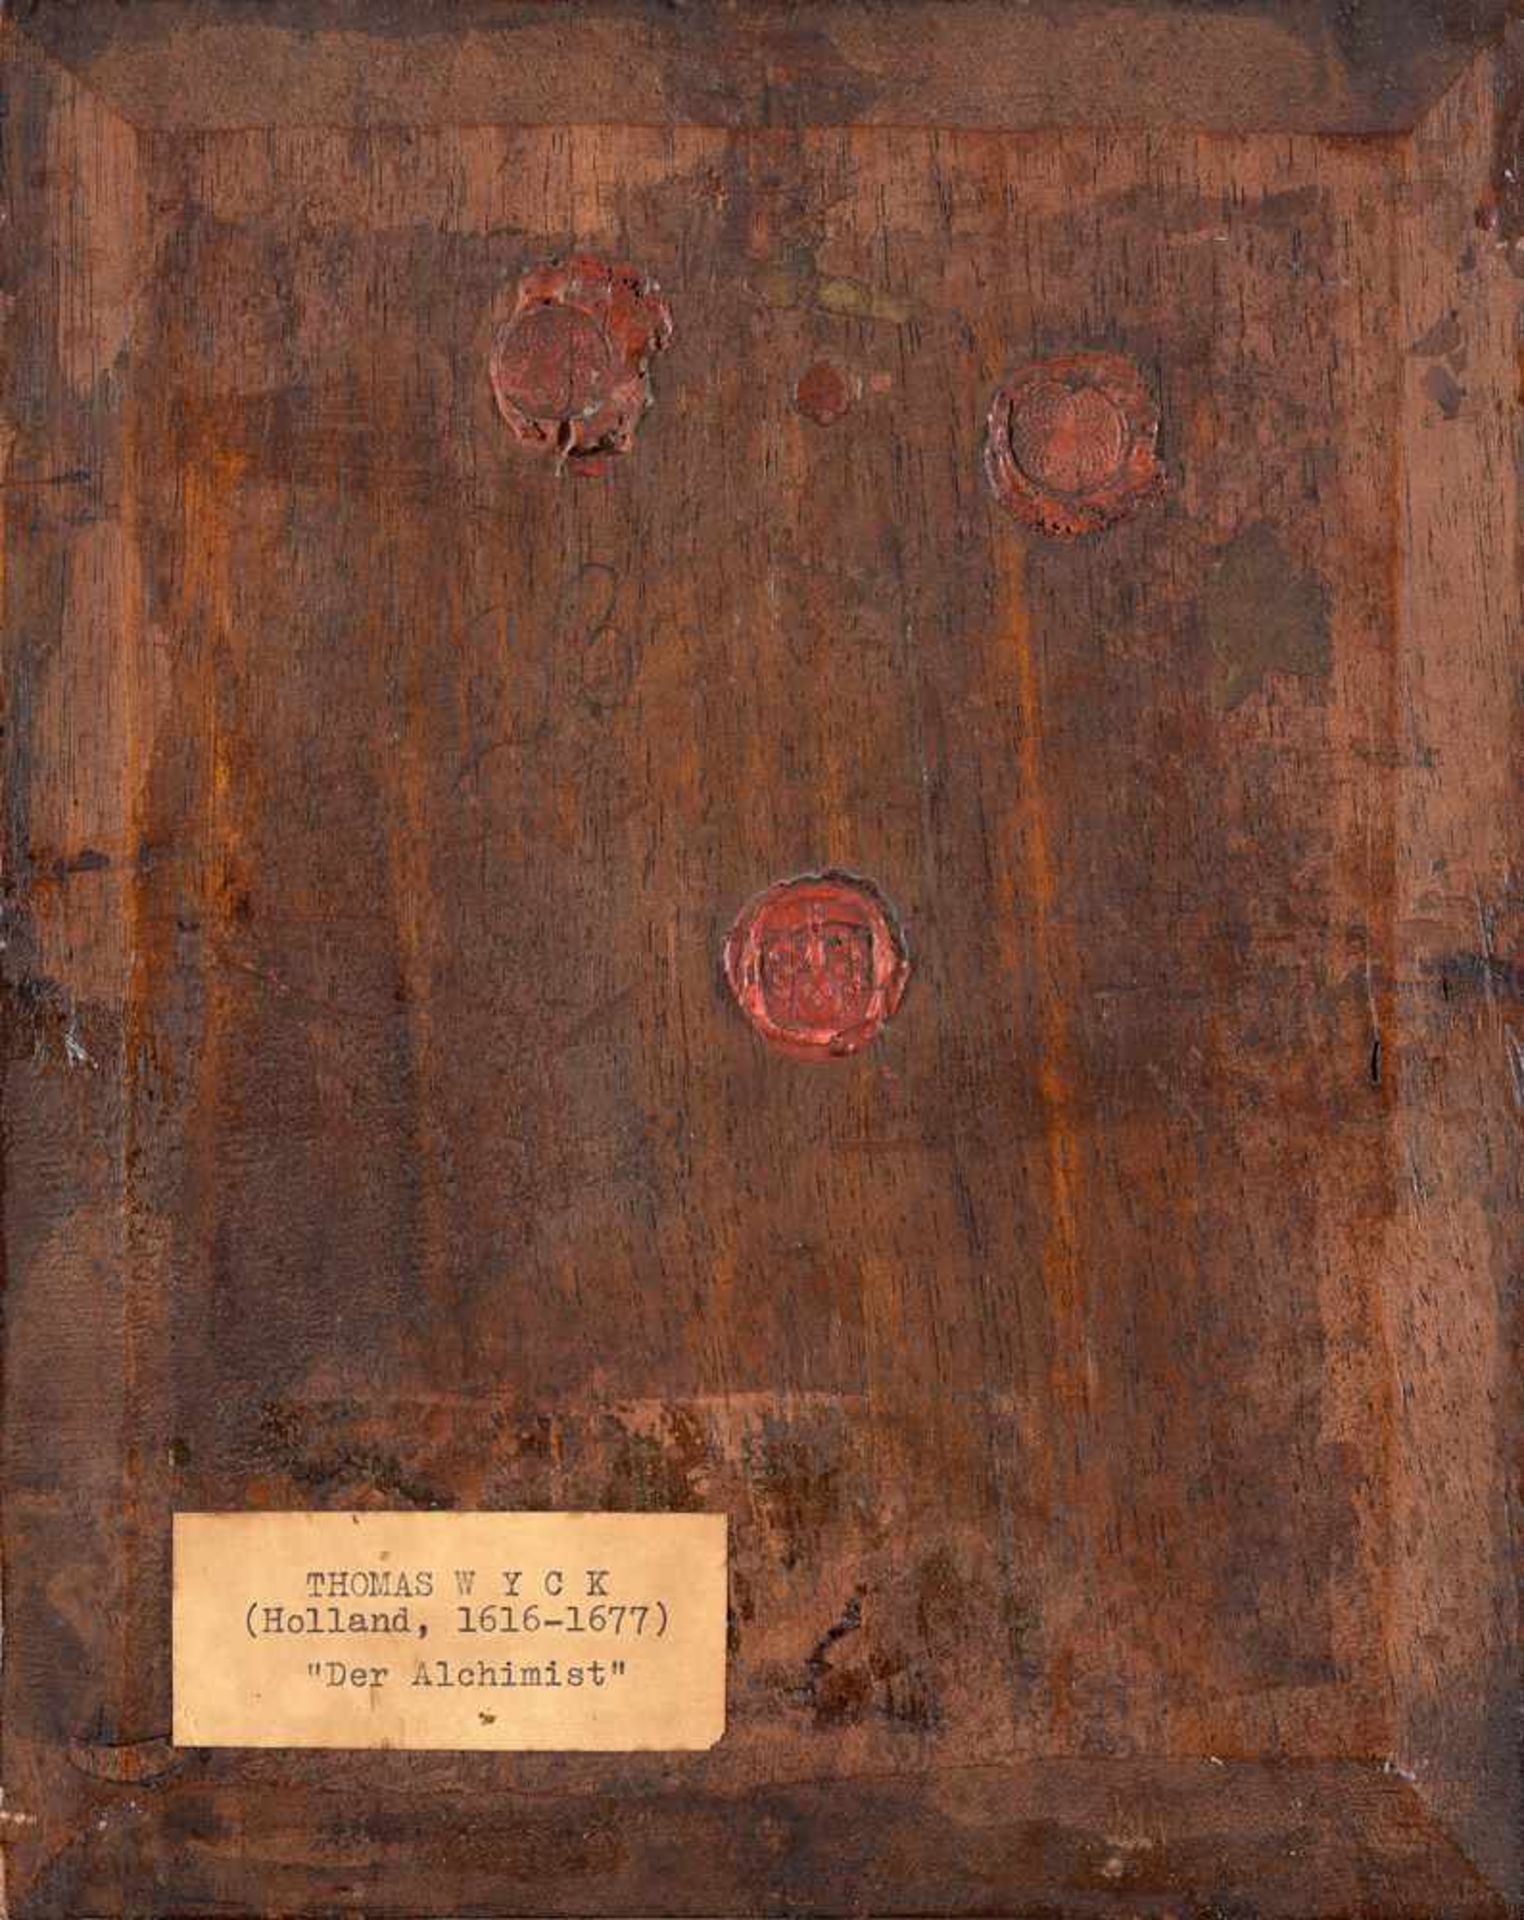 Wyck, Thomas 1616 Beverwijk - 1677 HaarlemDer Alchemist.Signiert. Öl/Holz, 28,5 x 23 cm. Rückseite - Bild 2 aus 3